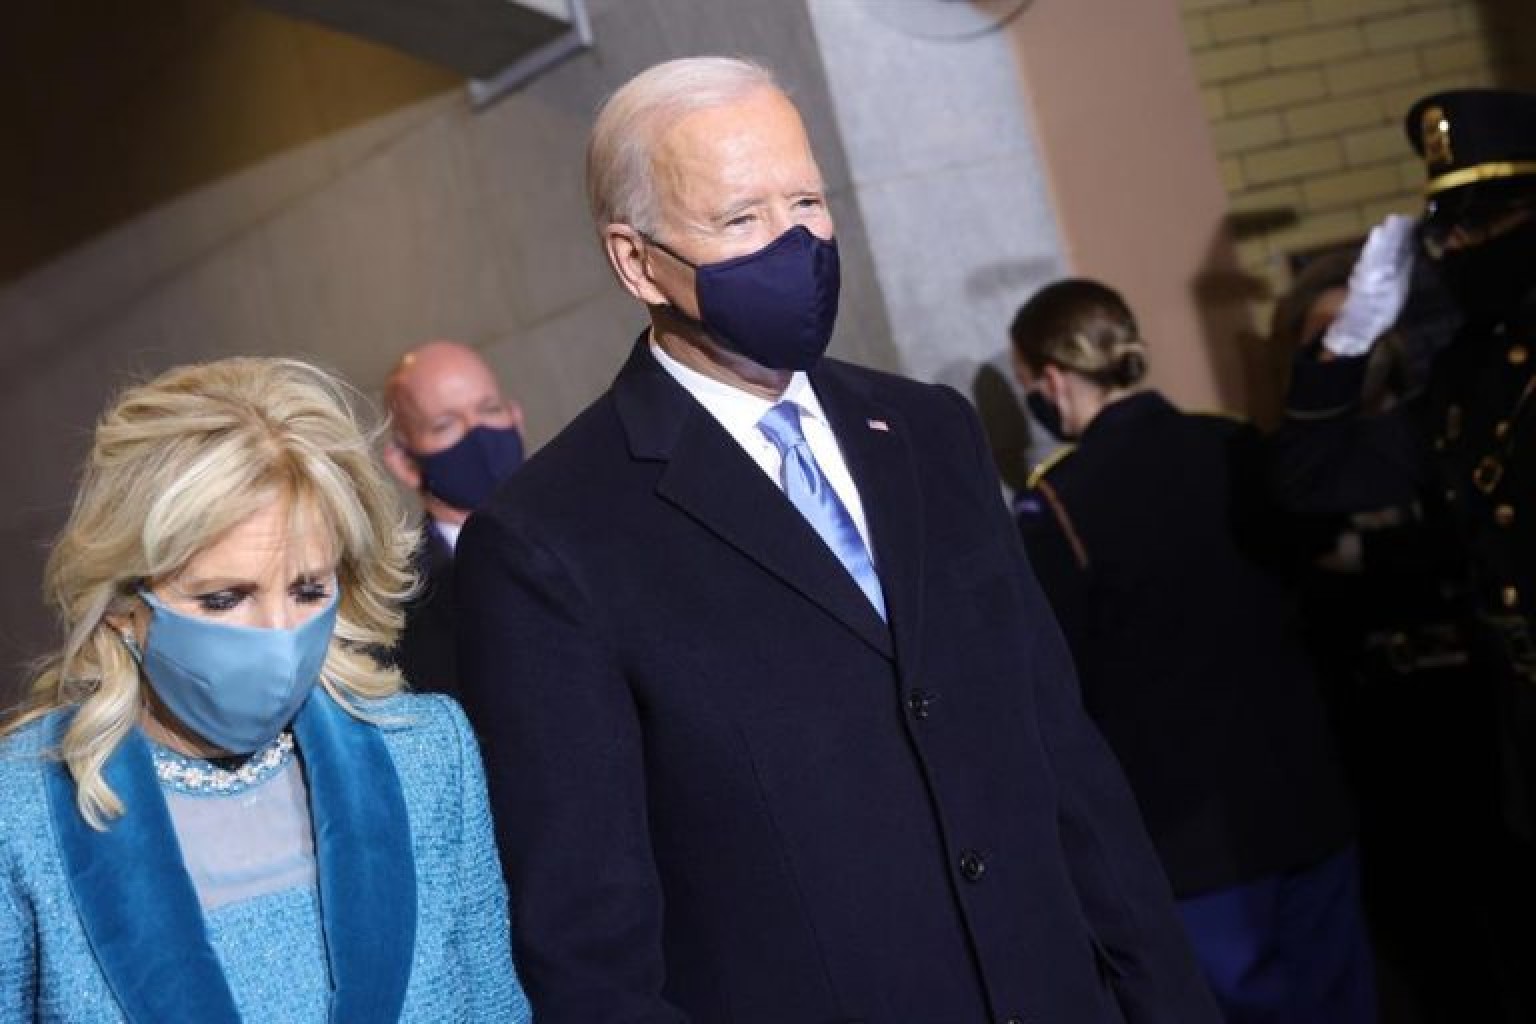 Jill Biden da bienvenida a latinos a Casa Blanca y asegura "les necesitamos"